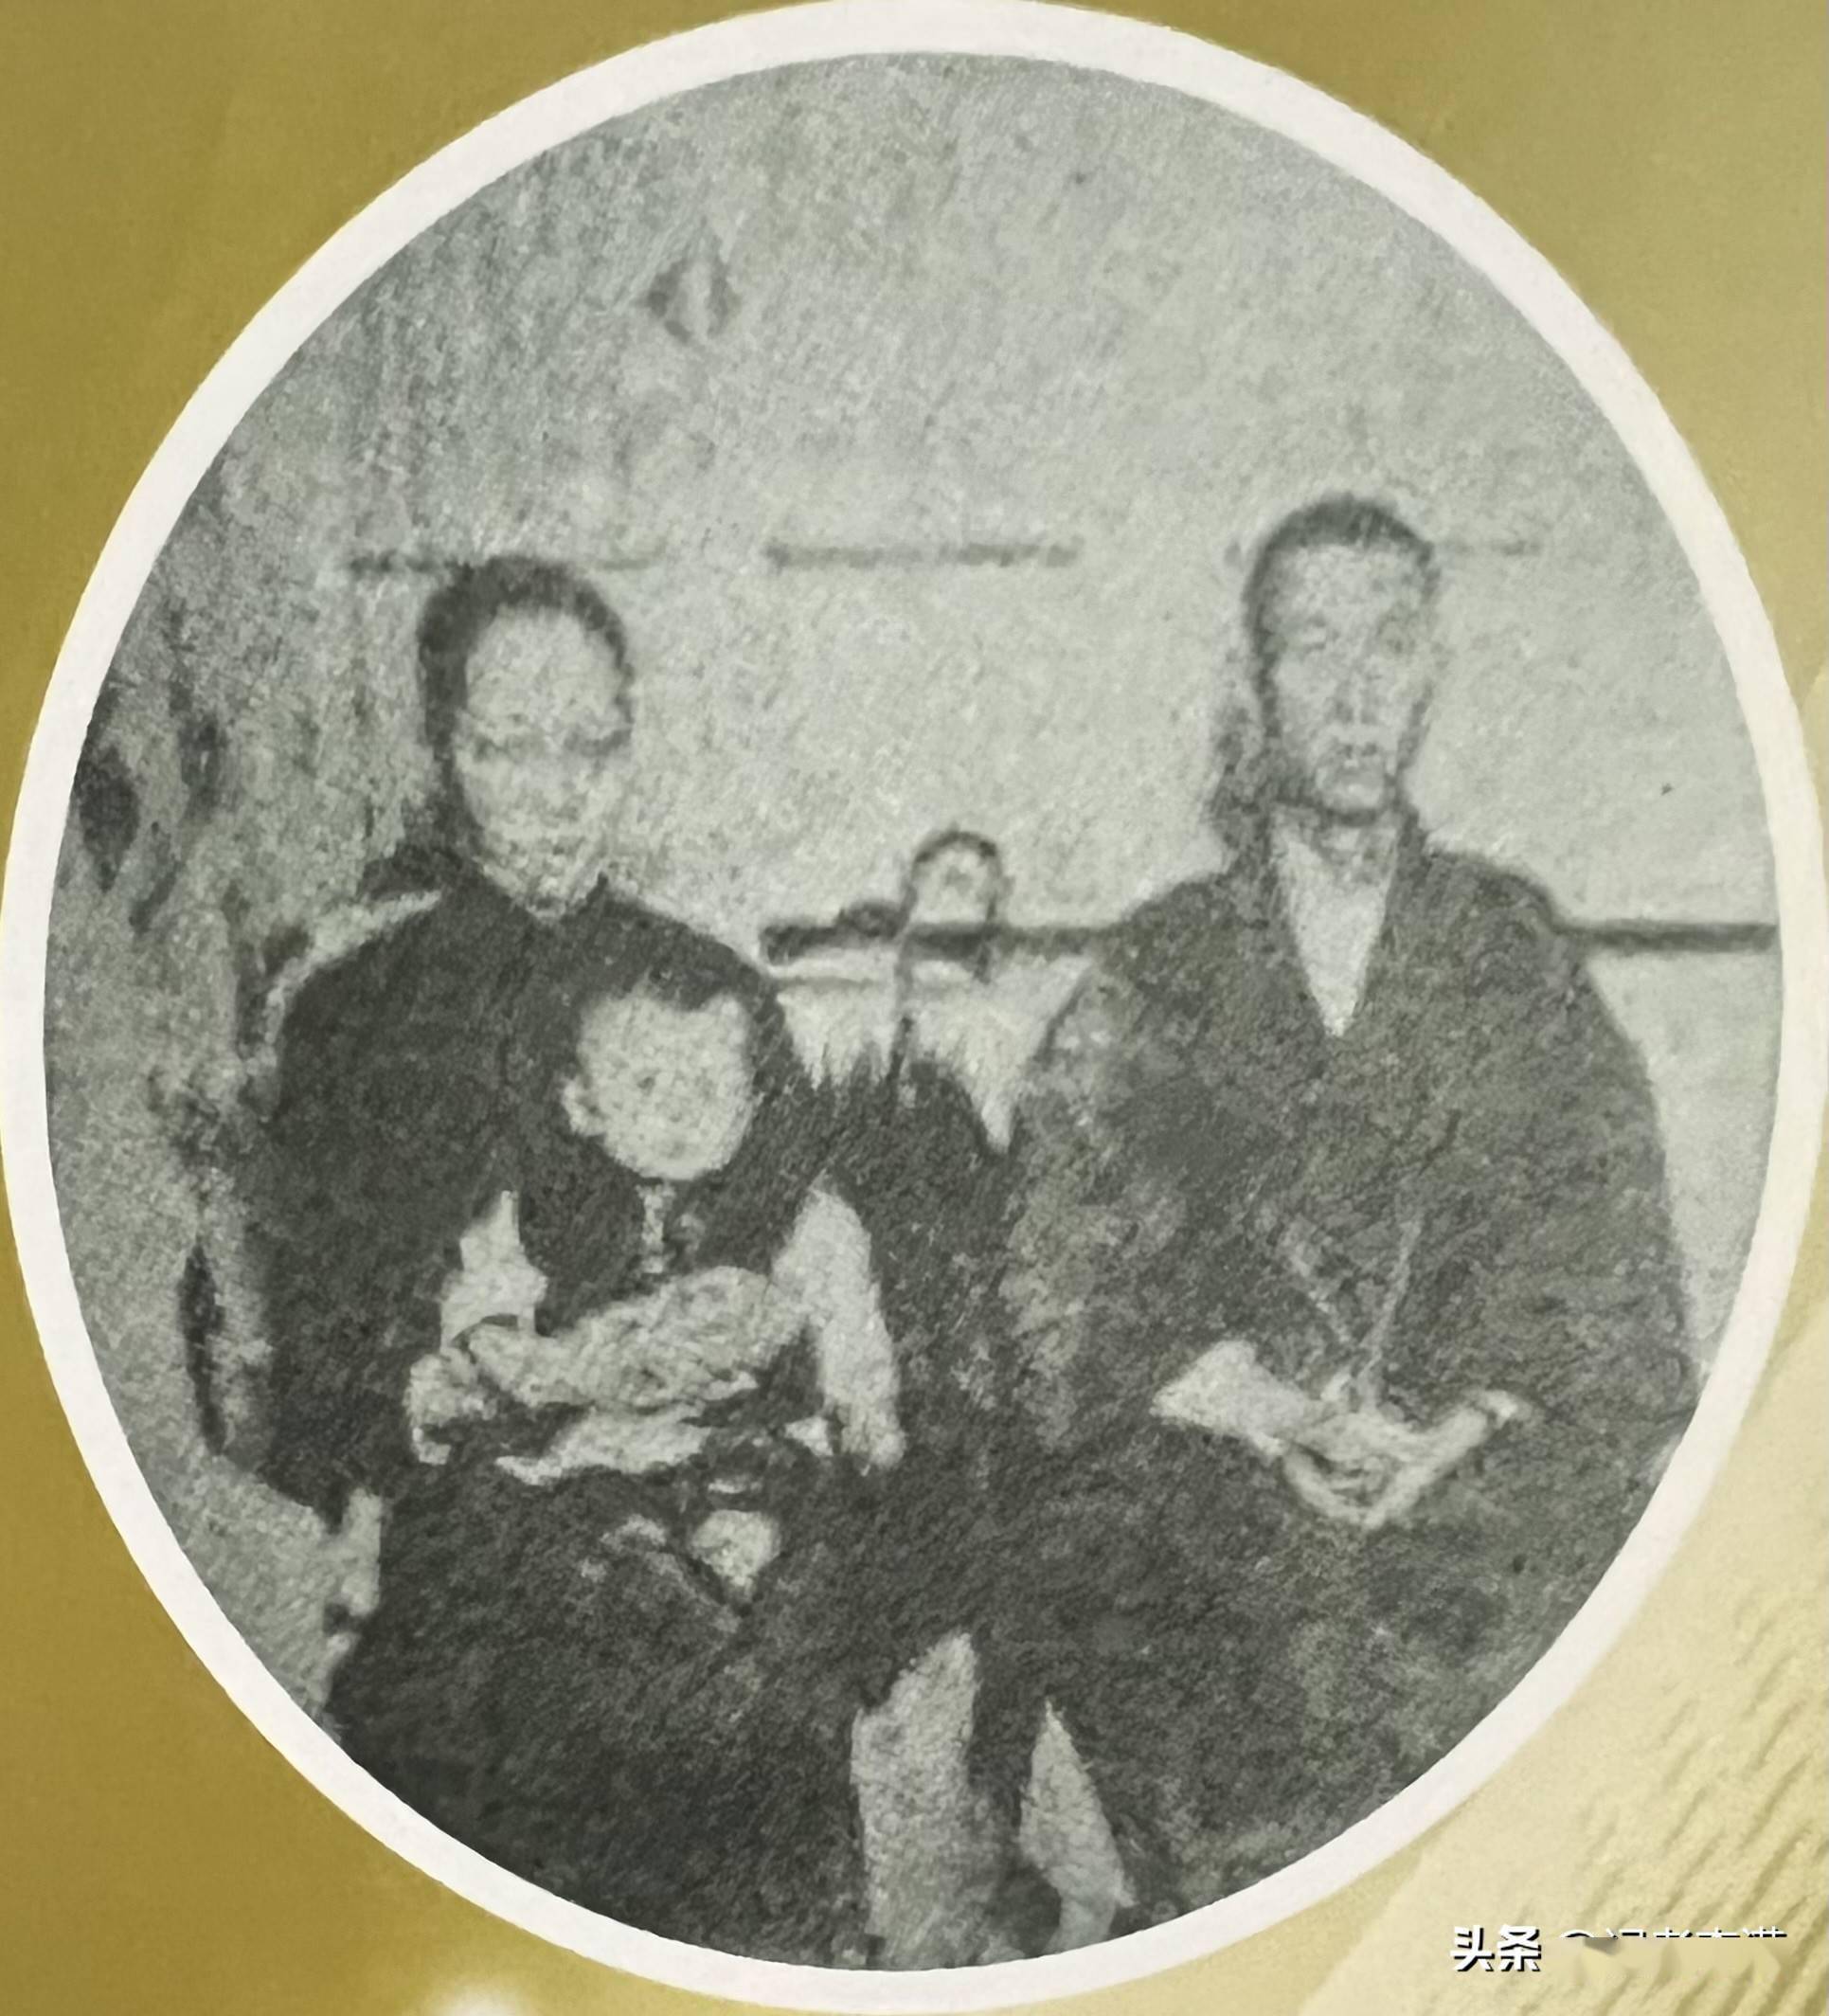 蔡锷与潘蕙英在日本治疗期间所摄10月31日,即蔡锷去世前8天:开创民国